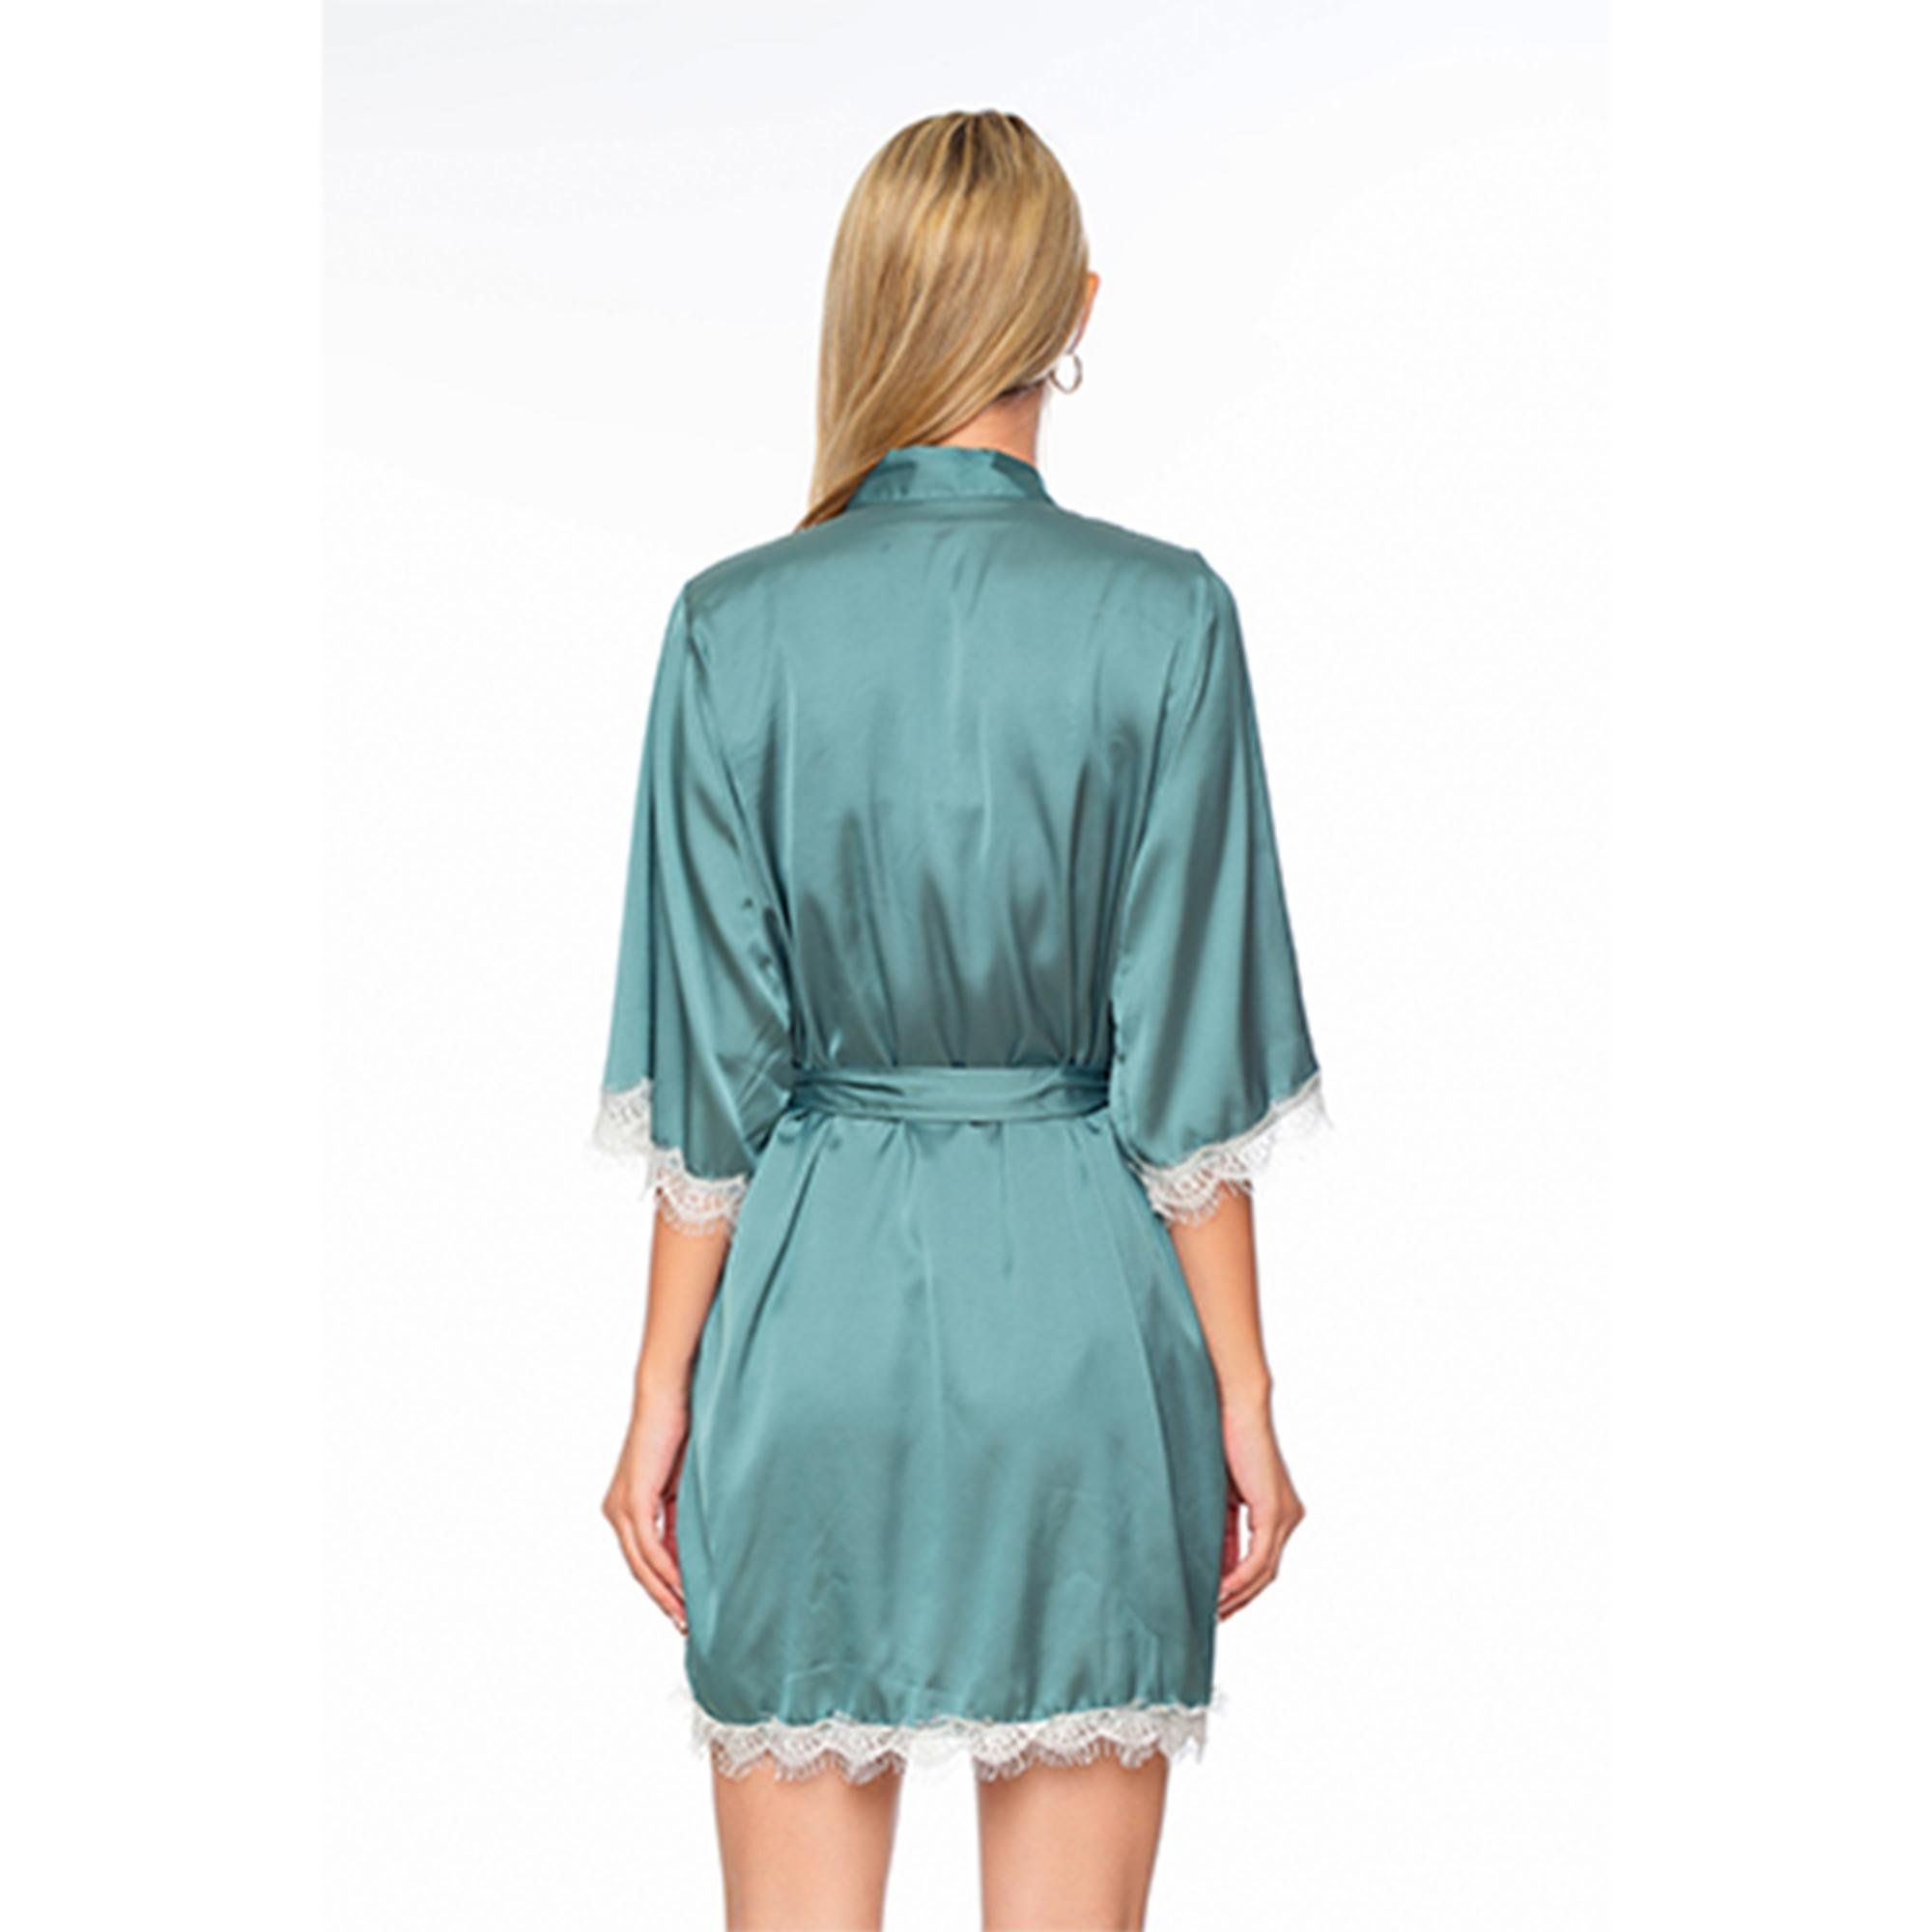  Áo choàng lụa cao cấp nữ phối ren mềm mại màu xanh bơ Dreamy CL04-18 